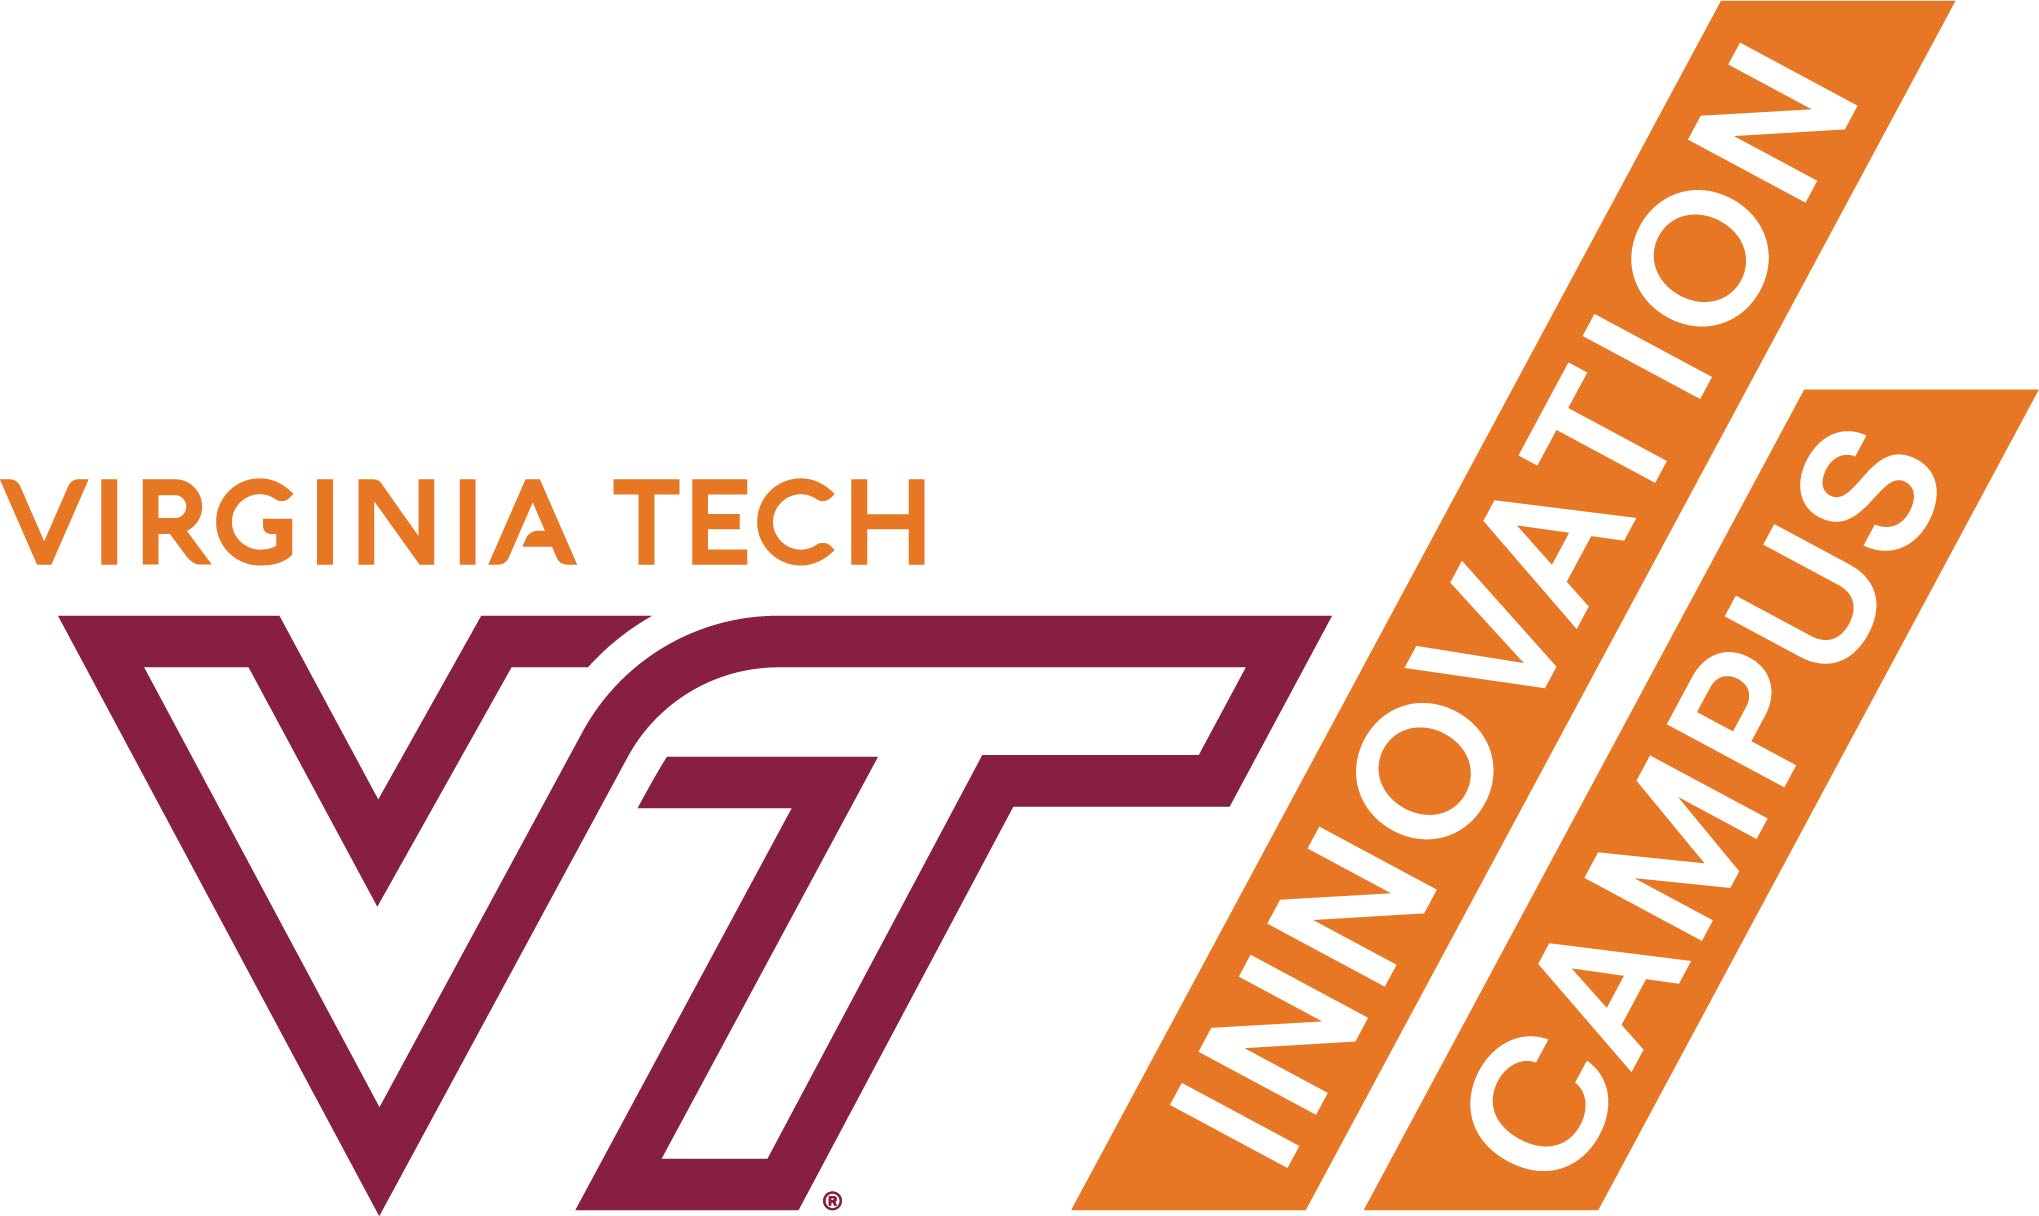 Virginia Tech Innovation Campus